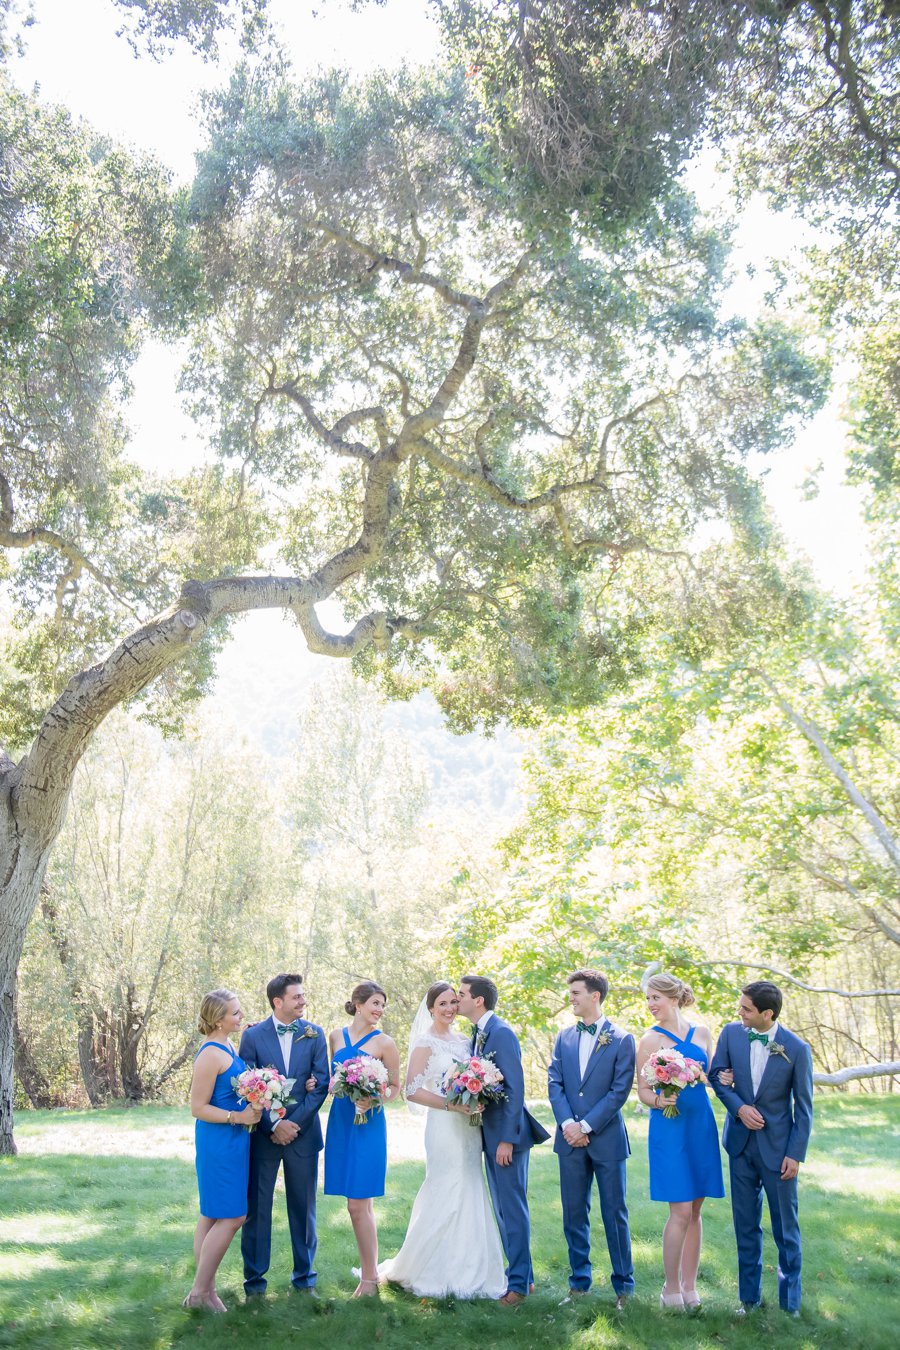 A Bright & Colorful Wedding In California via TheELD.com